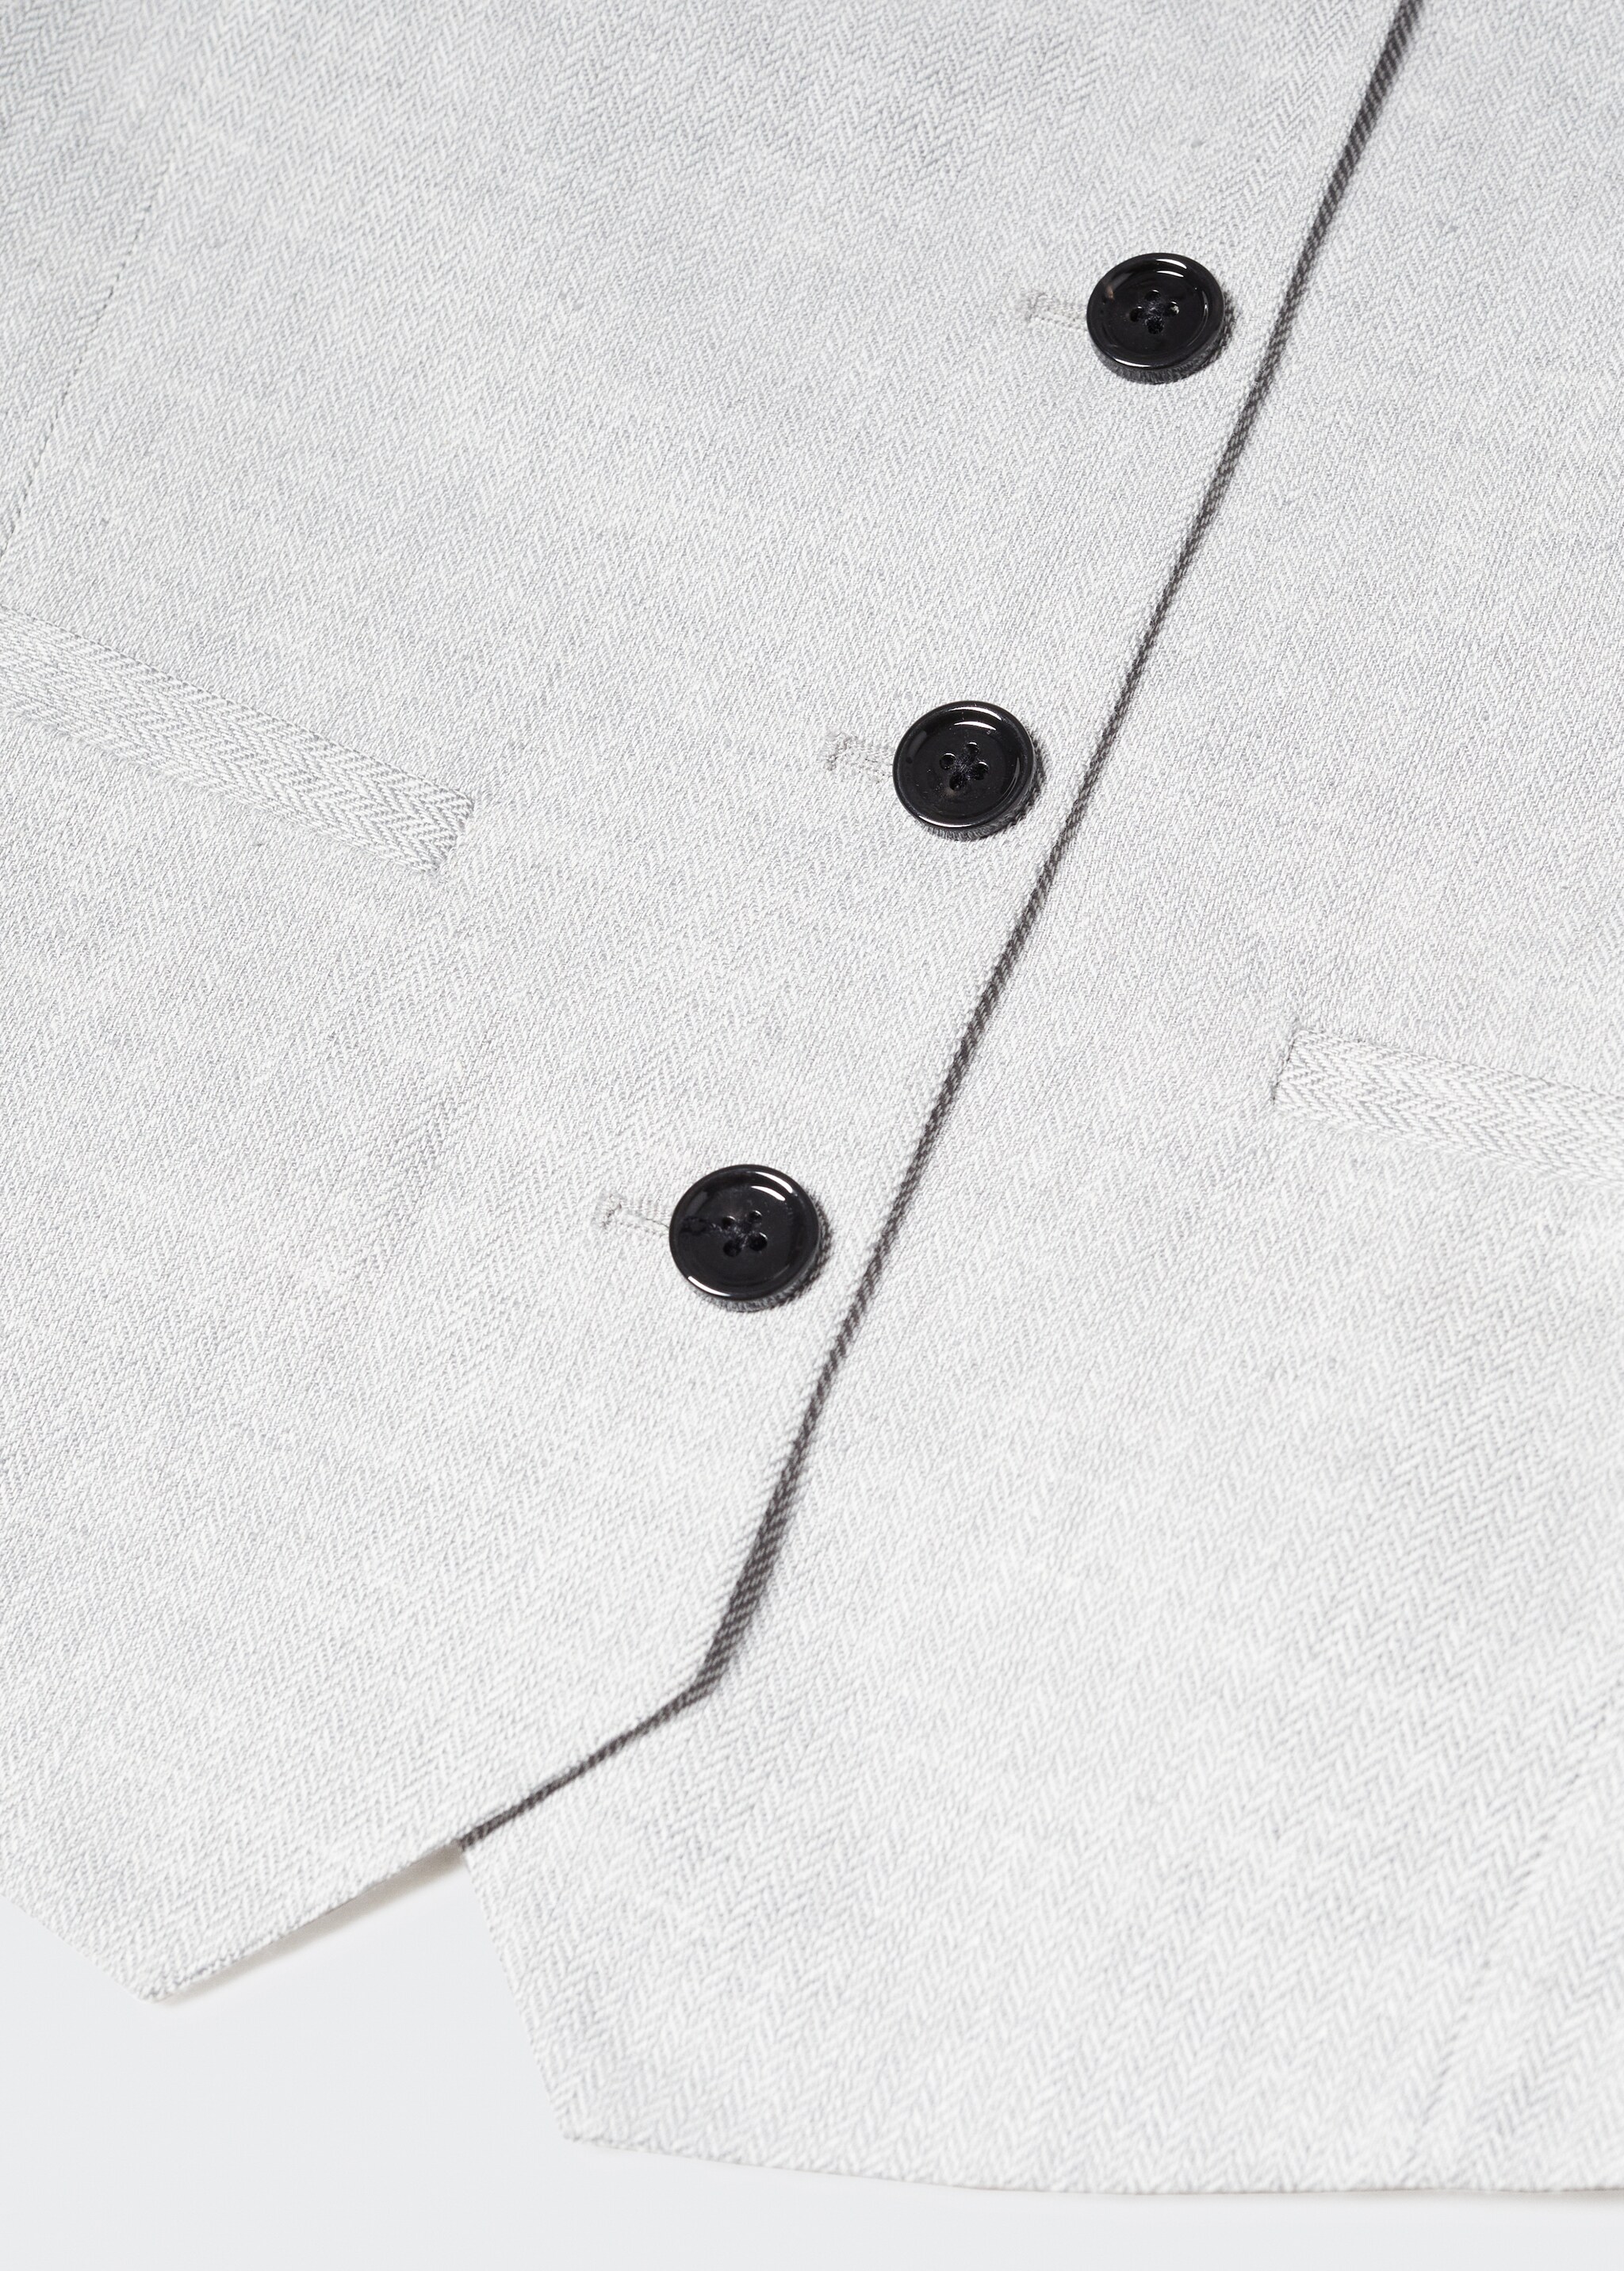 Herringbone linen suit waistcoat - Details of the article 8